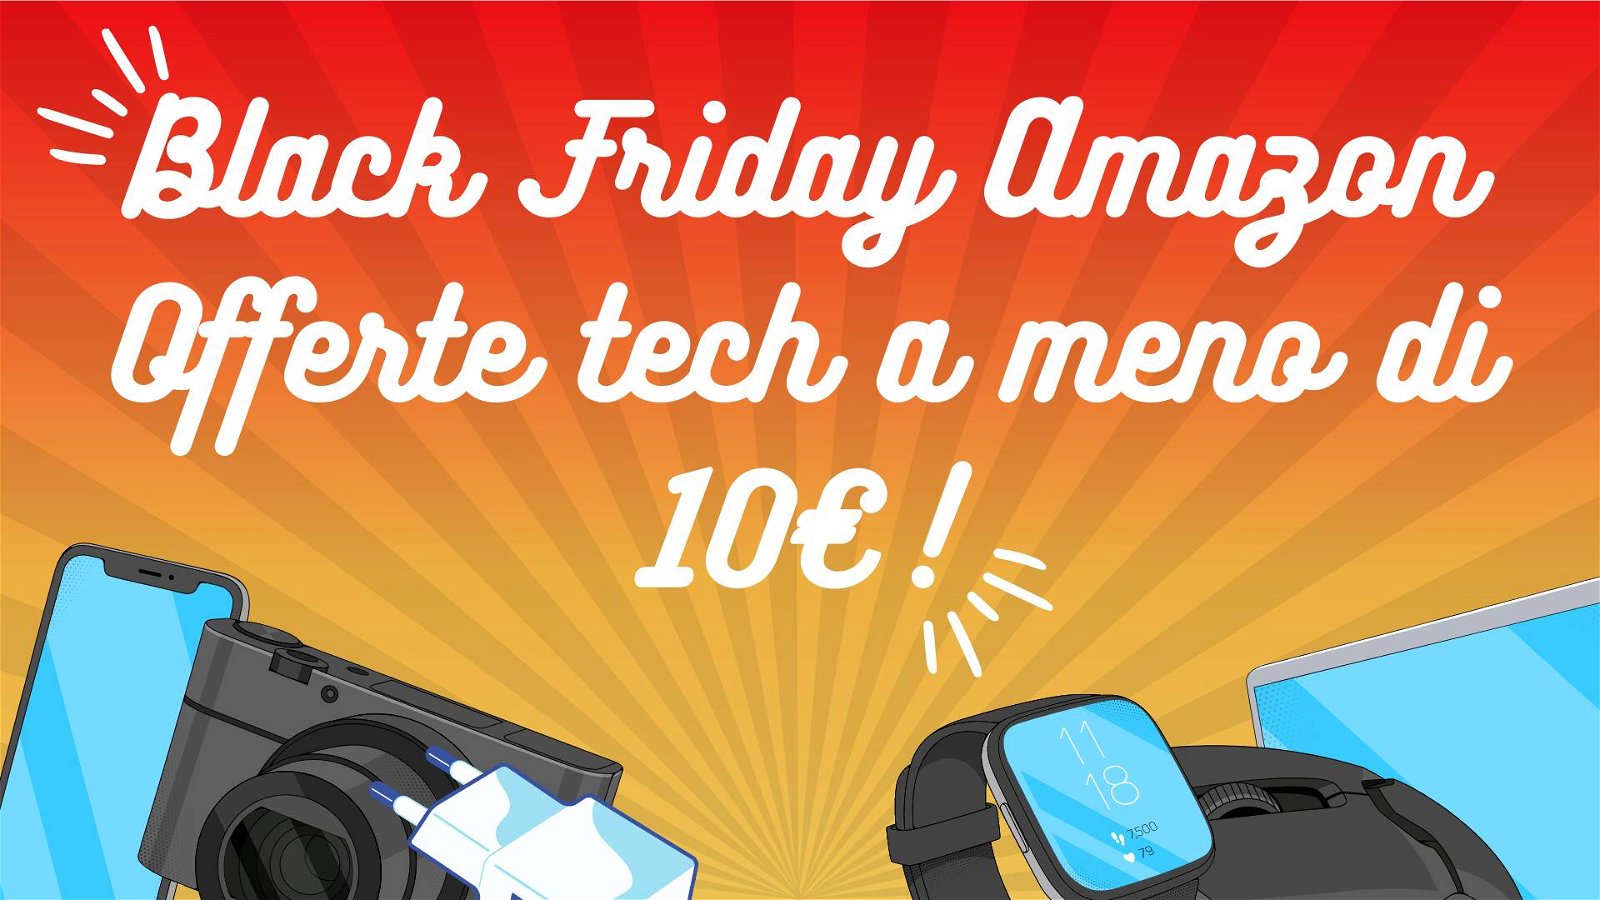 Immagine di Black Friday Amazon: imperdibili prodotti tech a meno di 10€!